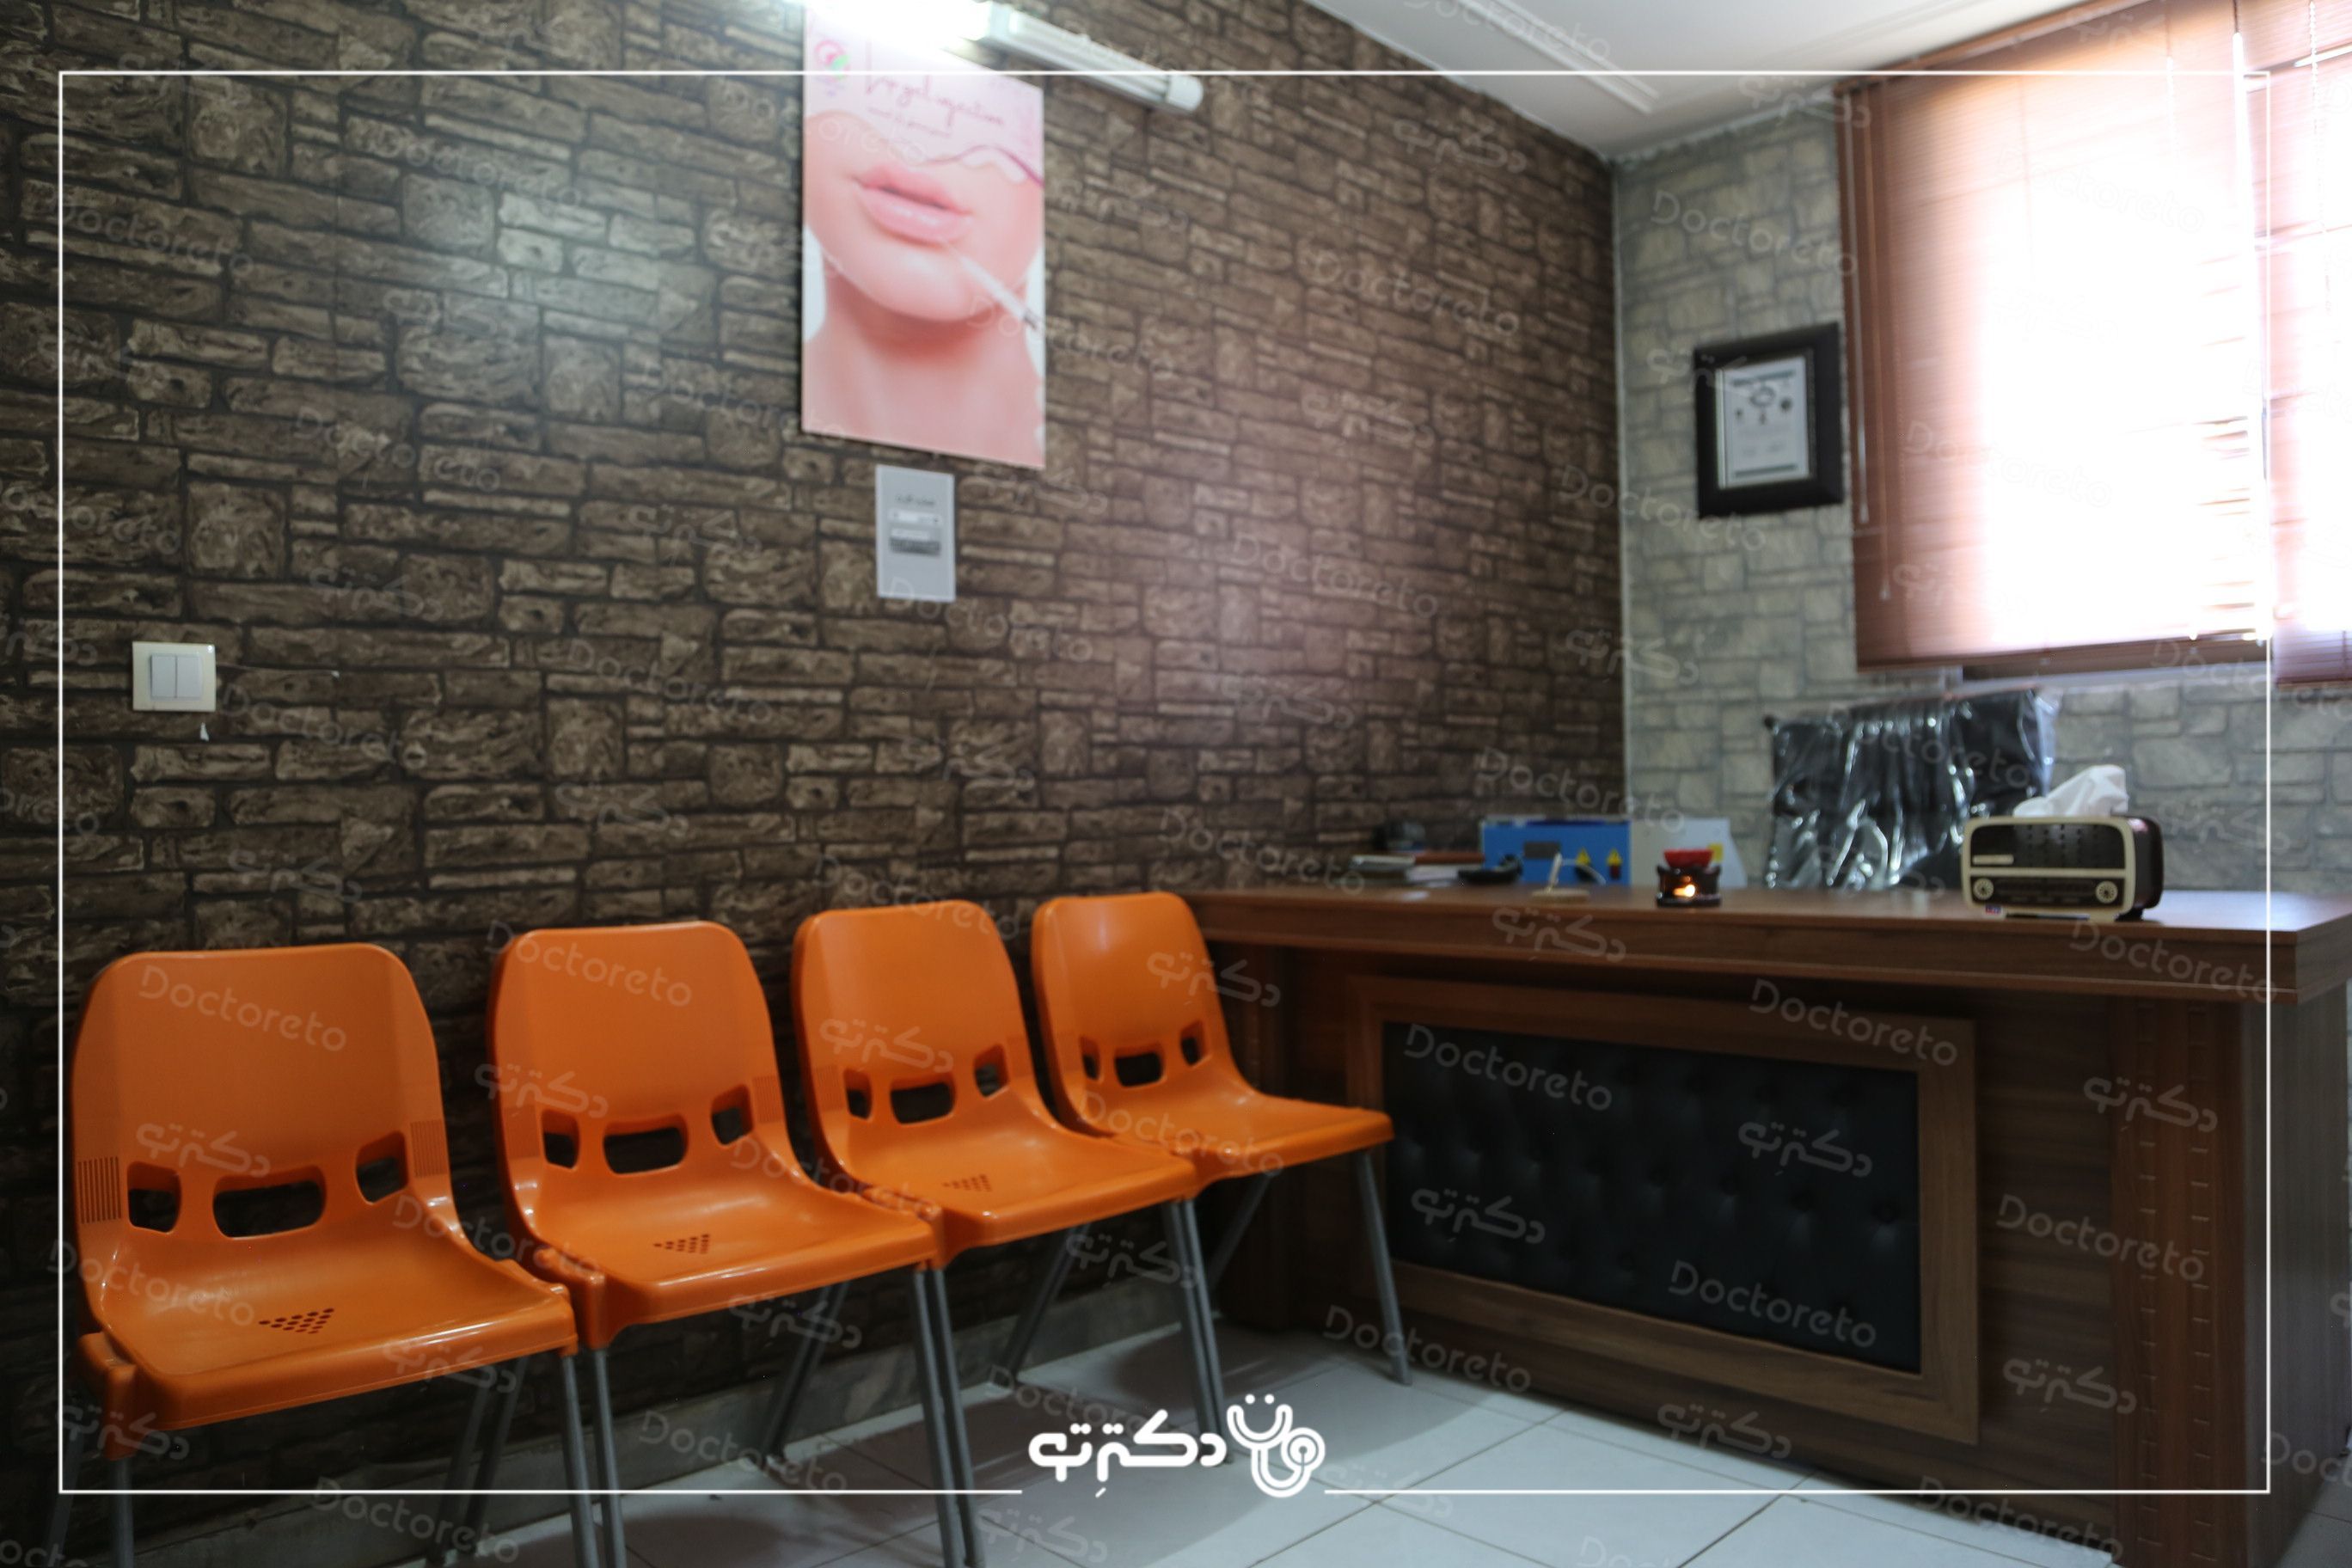 جوانسازی و کاهش لک صورت به روش تزریق مزوتراپی با برند فیوژن اسپانیایی (1cc) دکتر رضا ذاکری در اصفهان 2